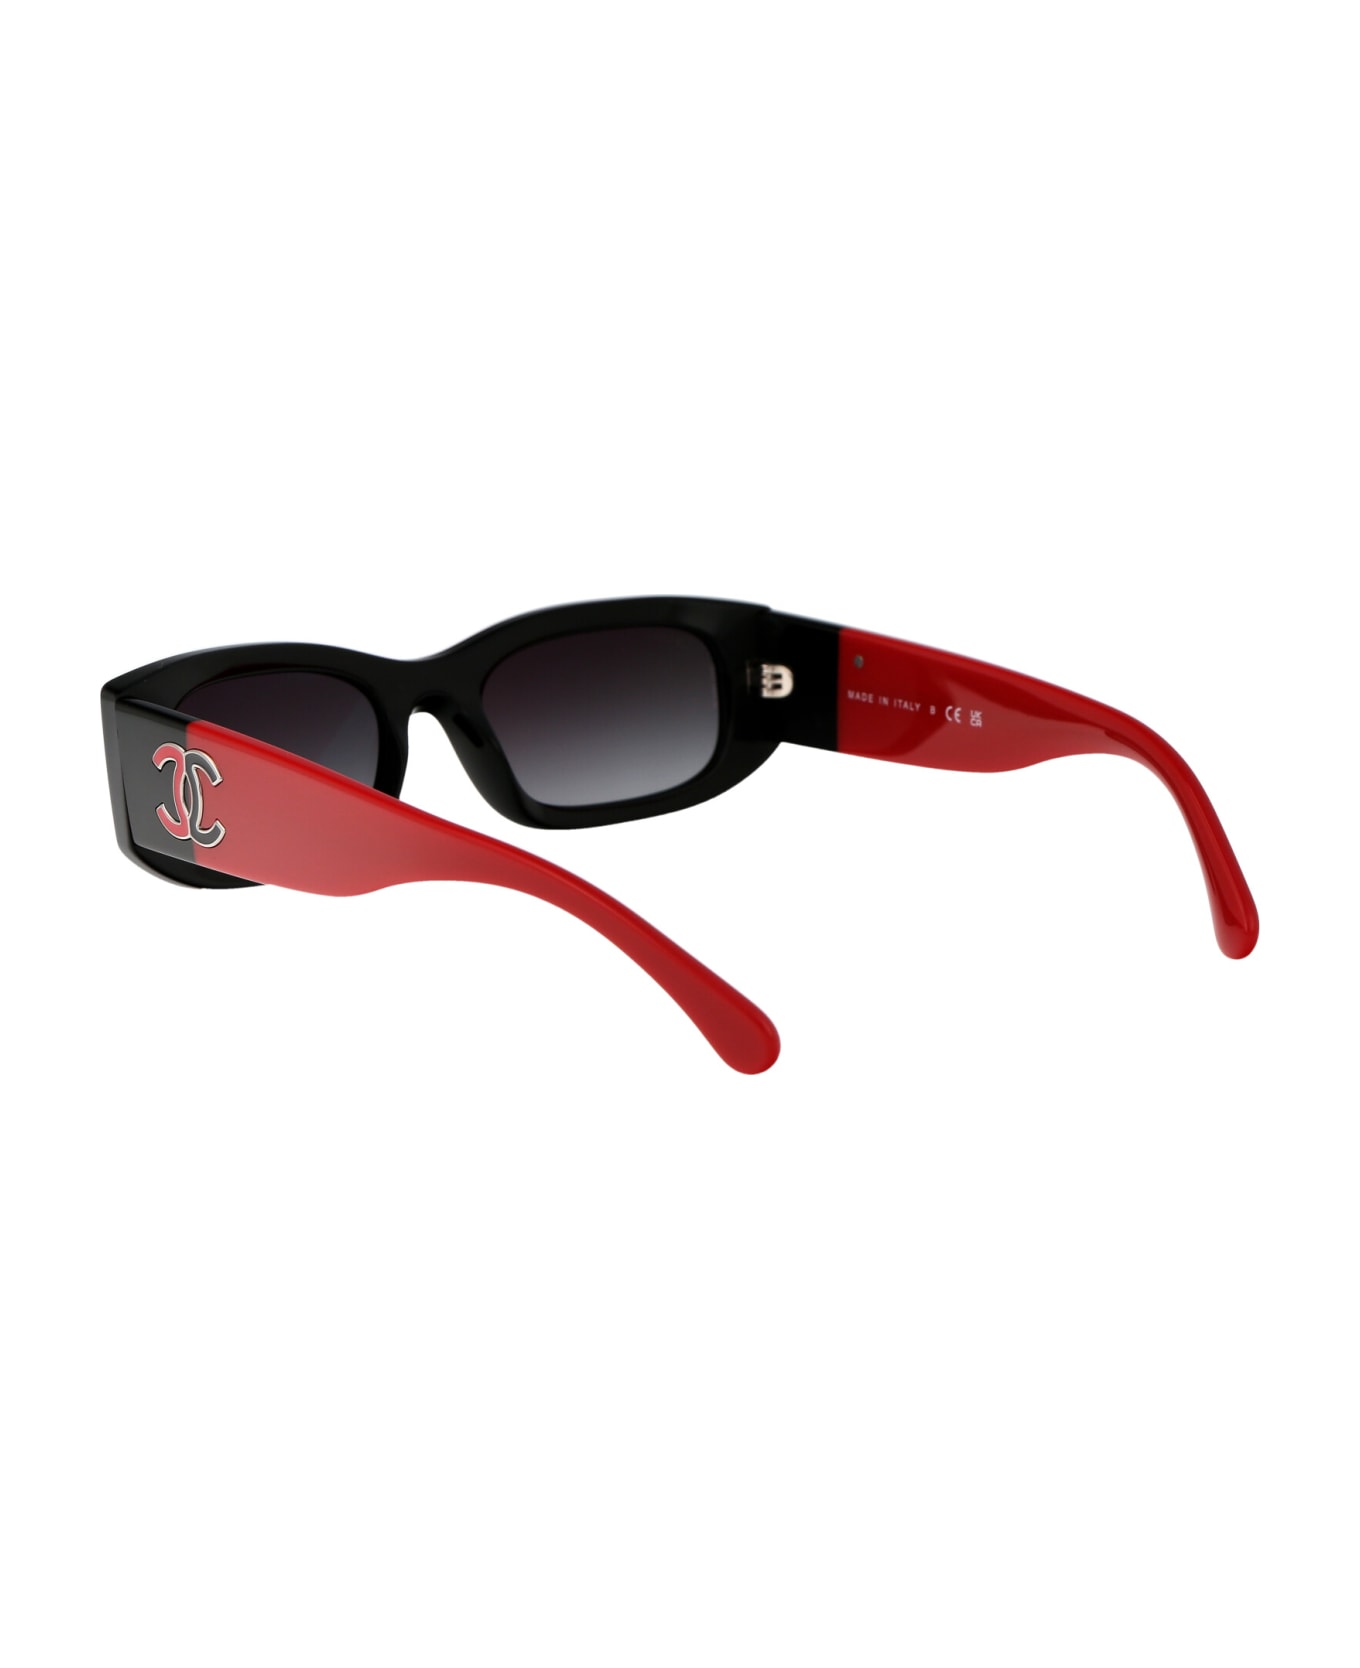 Chanel 0ch5525 Sunglasses - 1771S6 BLACK サングラス